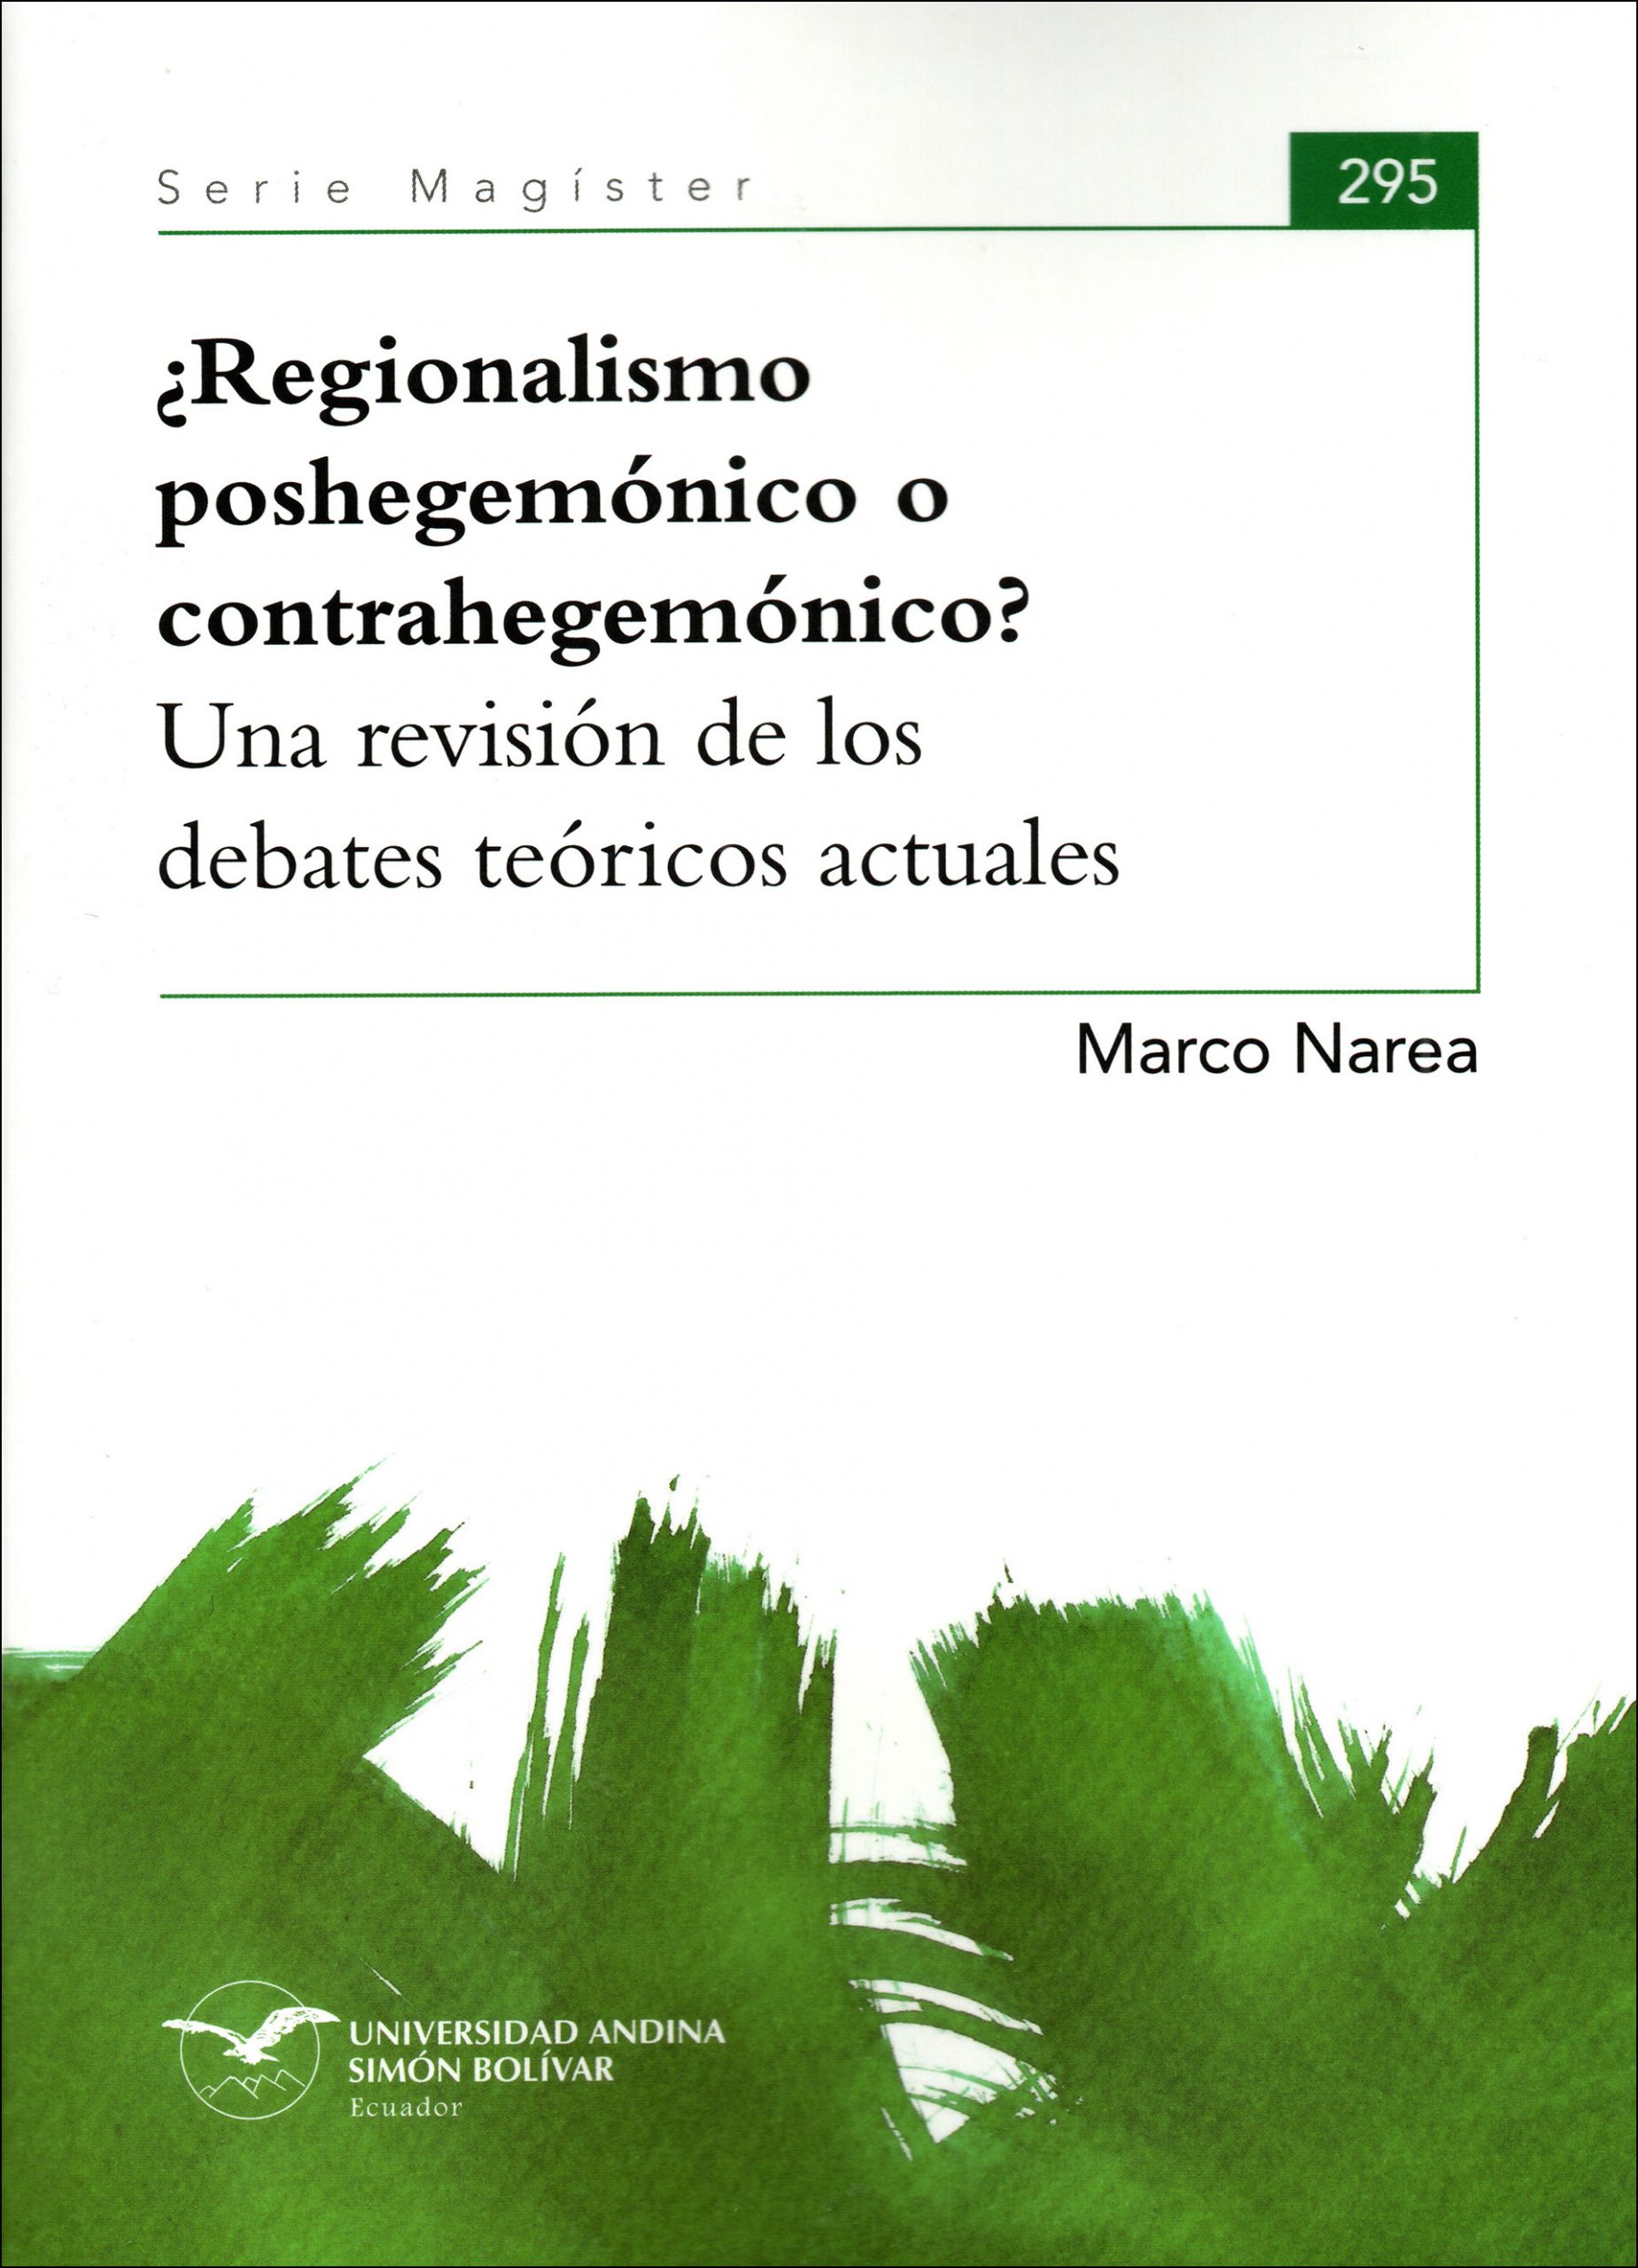 ¿Regionalismo poshegemónico o contrahegemónico? Una revisión de los debates teóricos actuales